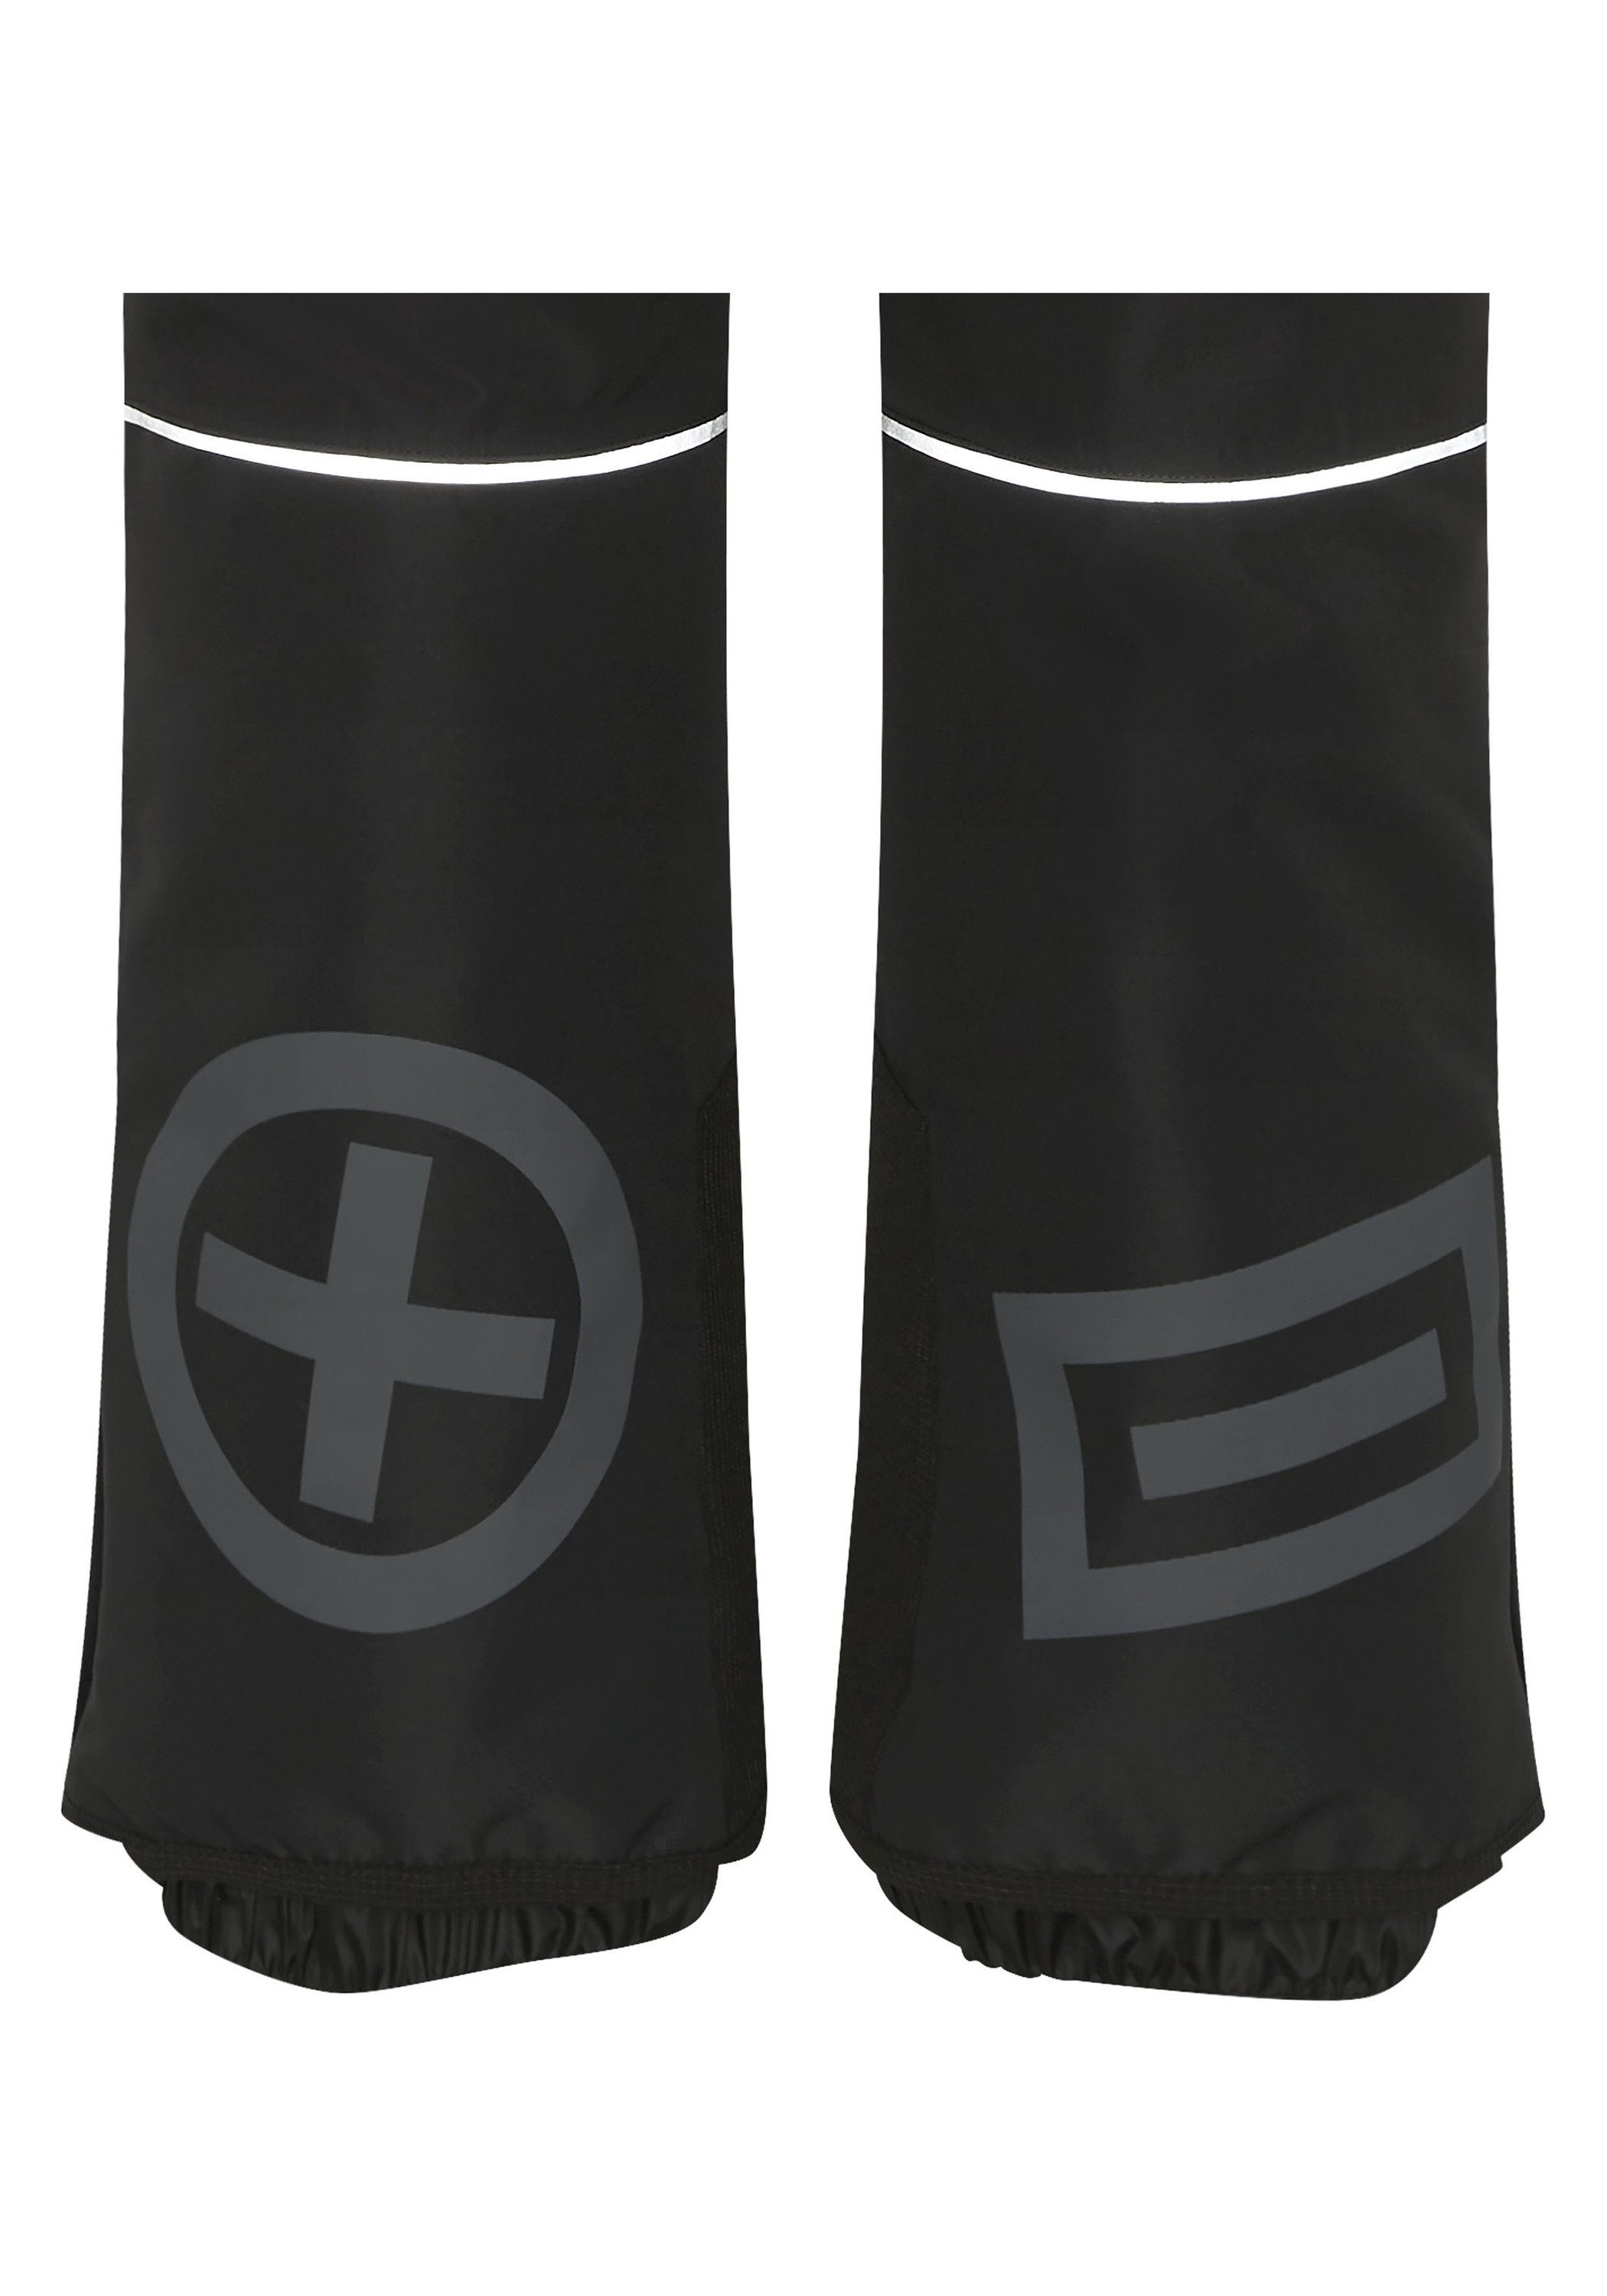 Chiemsee Sporthose Skihose mit 1 Black Beauty PLUS-MINUS-Print 19-3911